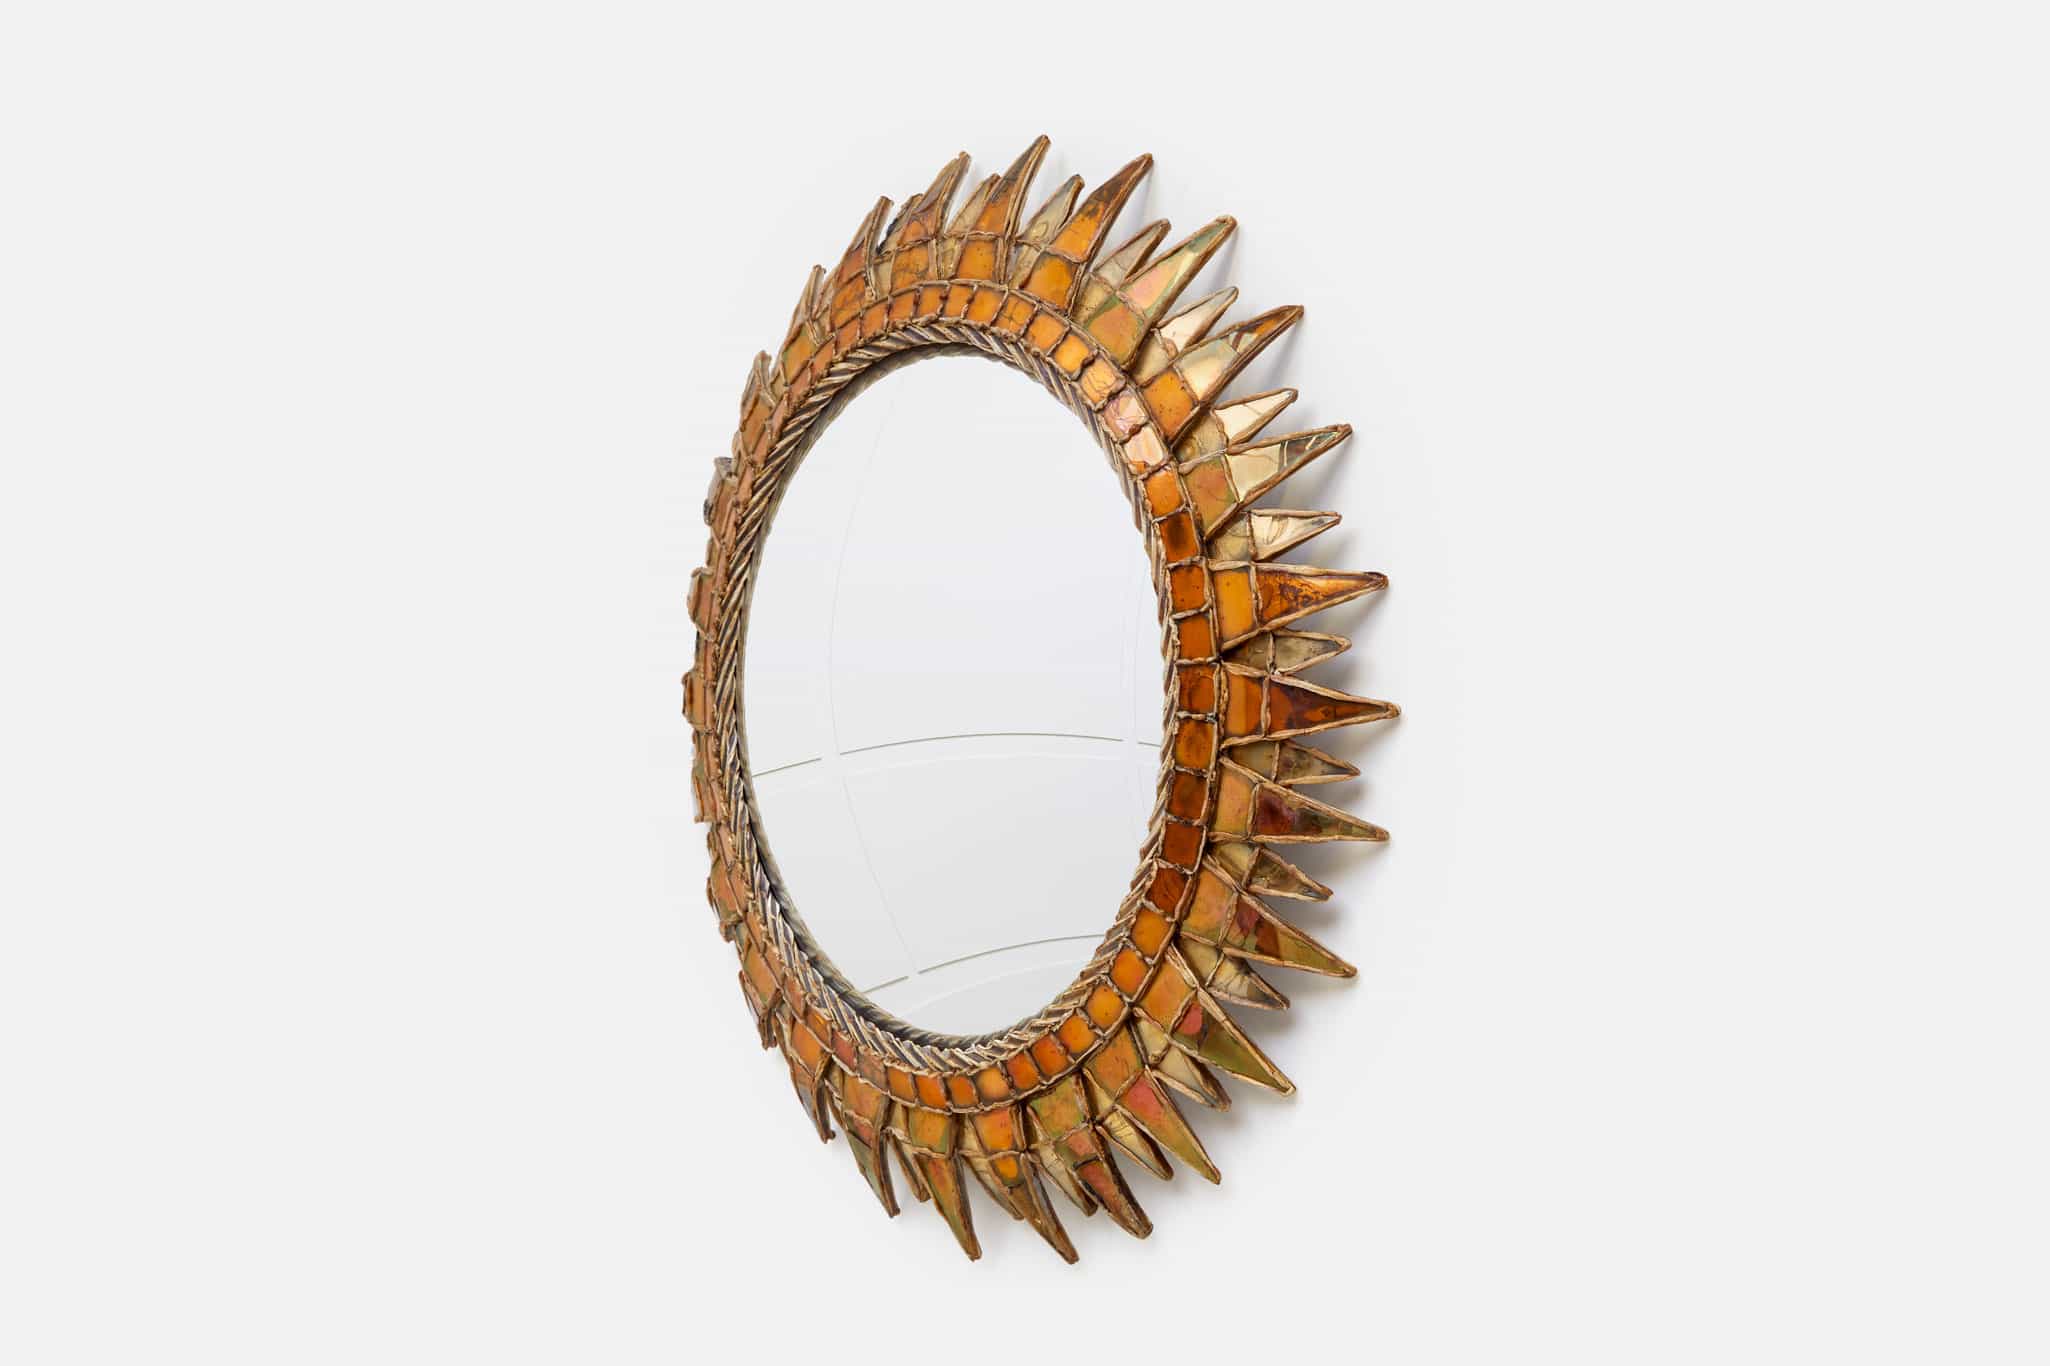 Line Vautrin, Gilded and orange “Soleil à pointes n°3” mirror, vue 01